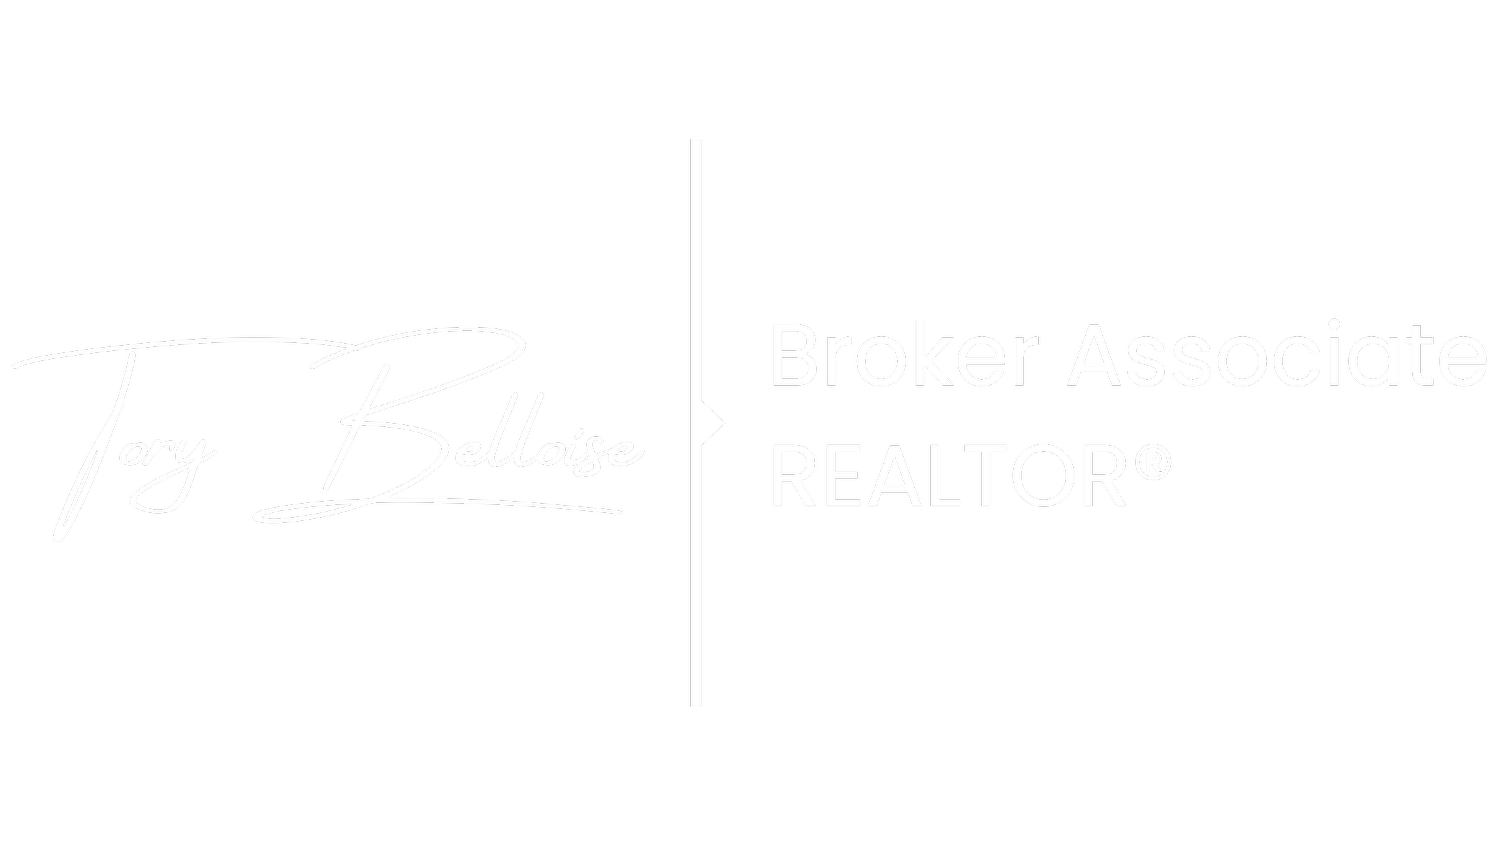 Tory Belloise | REALTOR®, Broker Associate